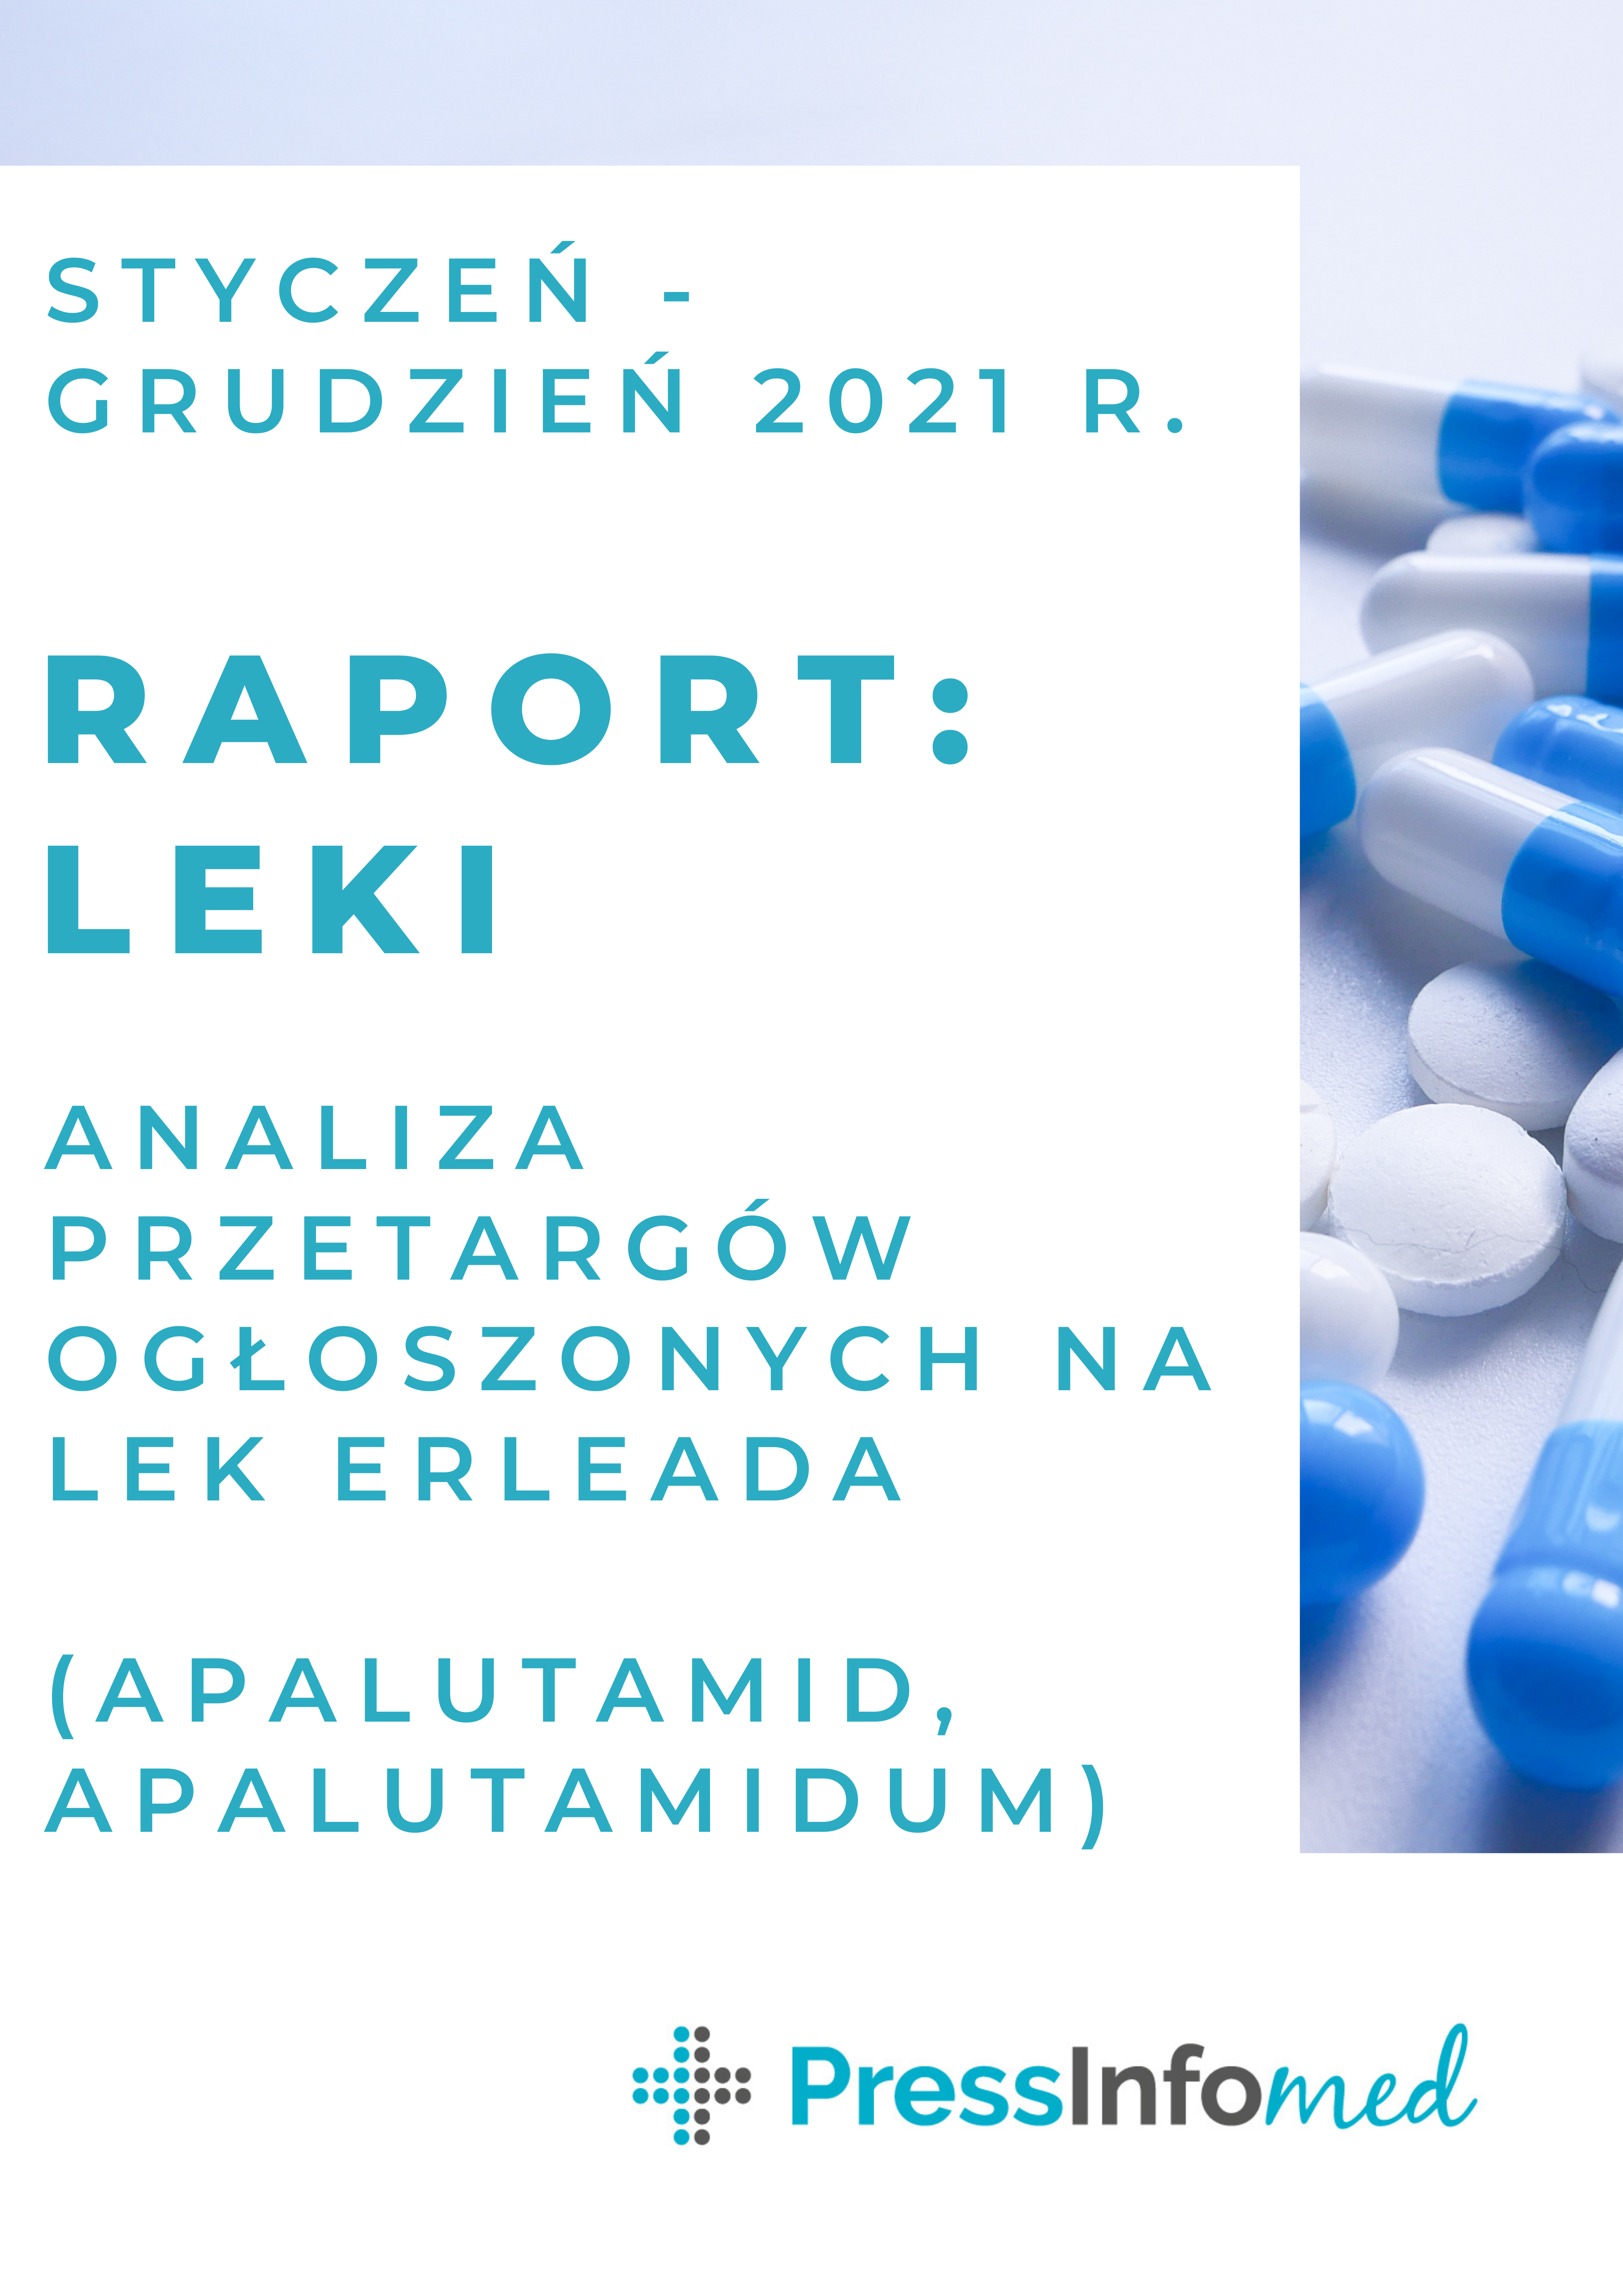 Raport z analizy przetargów na lek Erleada (apalutamid, apalutamidum) ogłoszonych w 2021 r.